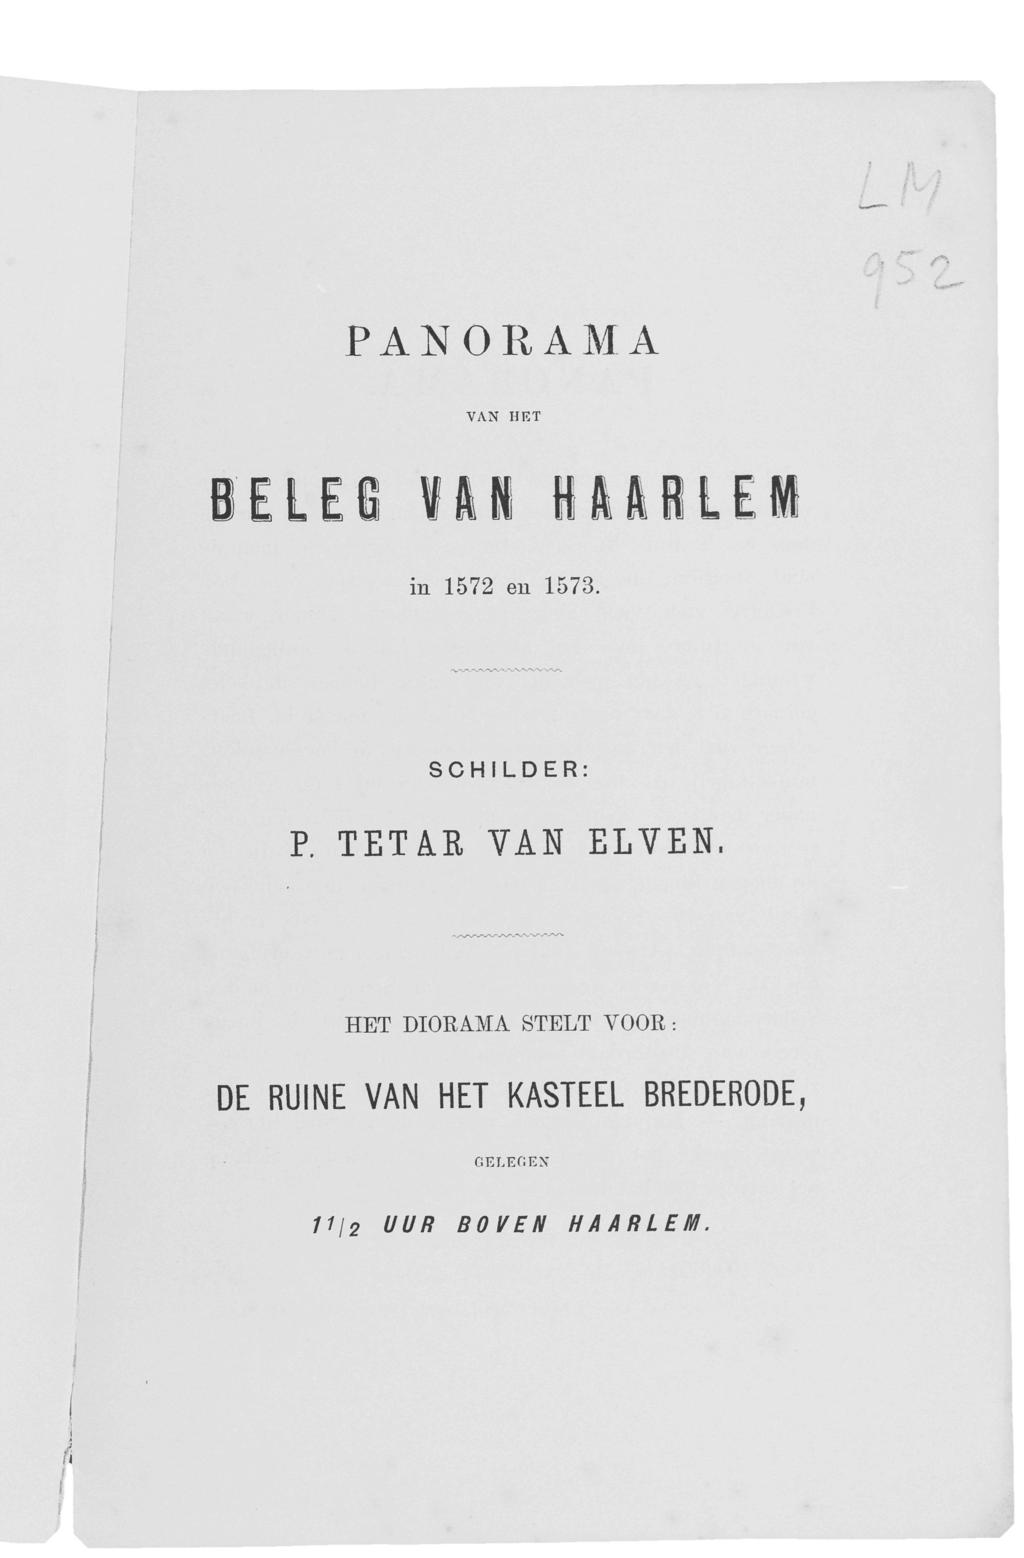 PANORAMA VAN HKT BELES fli ilftilei in 1572 en 1573. SCHILDER: P. TETiR VAN ELVEN.